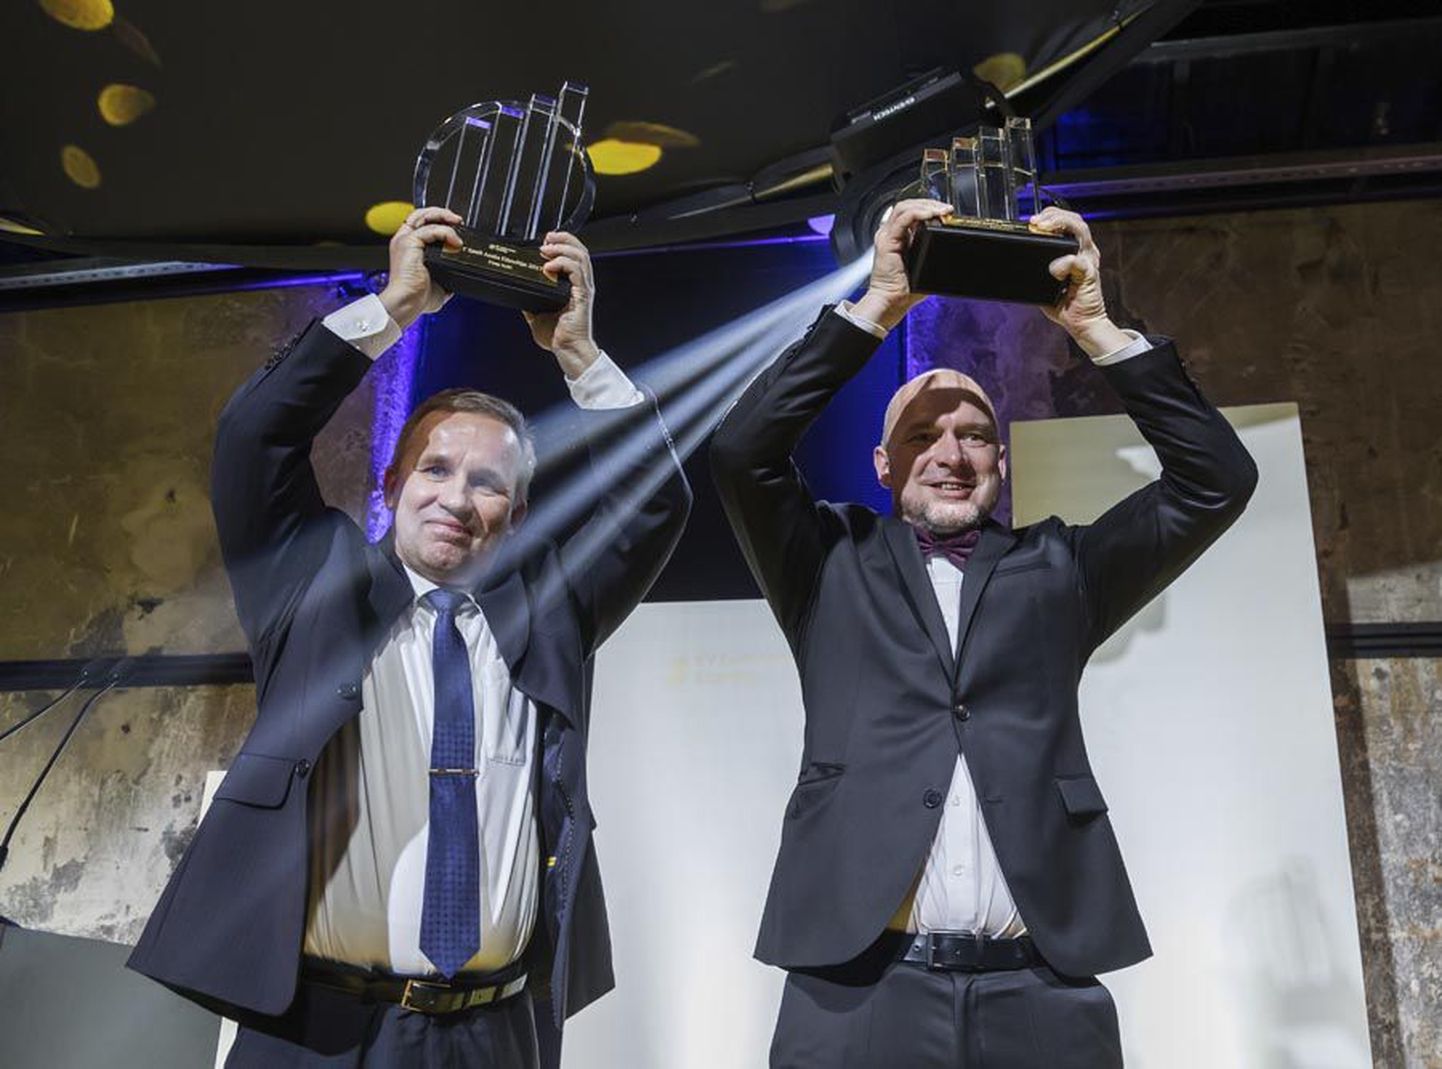 Märtsis tunnistati Viljandi mehed Arno Kütt (vasakul) ja Peep Kuld Eesti edukamateks ettevõtjateks ning nüüd käisid nad Eestit esindamas Monacos ettevõtjate olümpial.